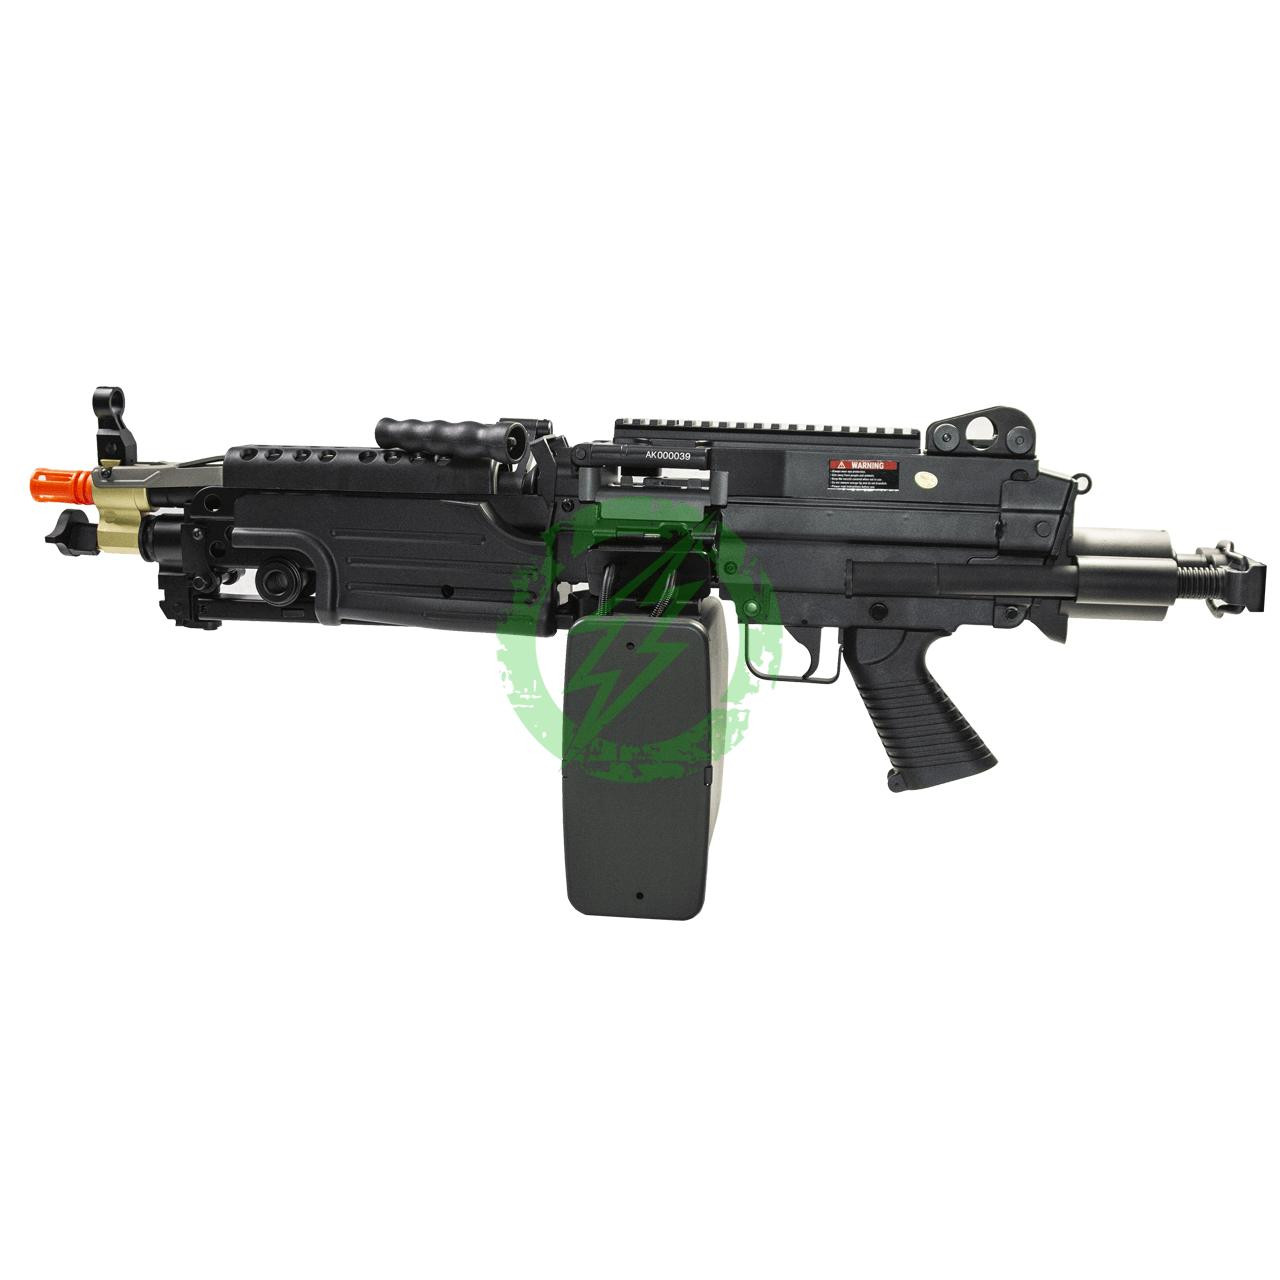  Cybergun A&K FN Licensed Black M249 Airsoft Machine Gun Para 